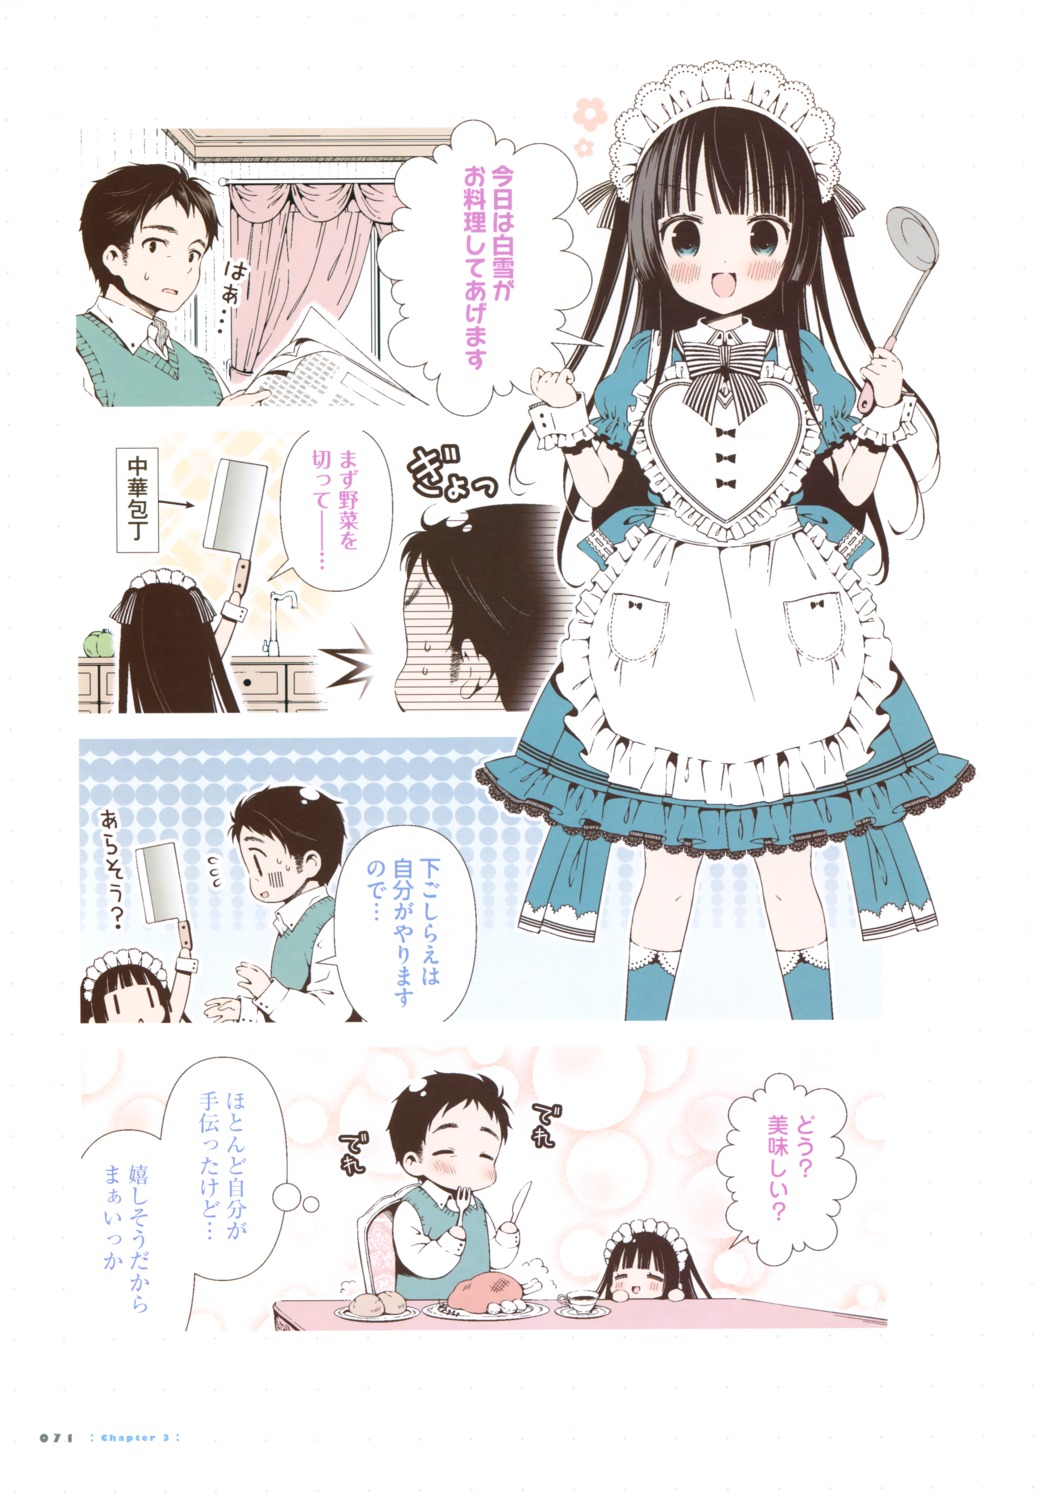 maid mitsuki_(mangaka)